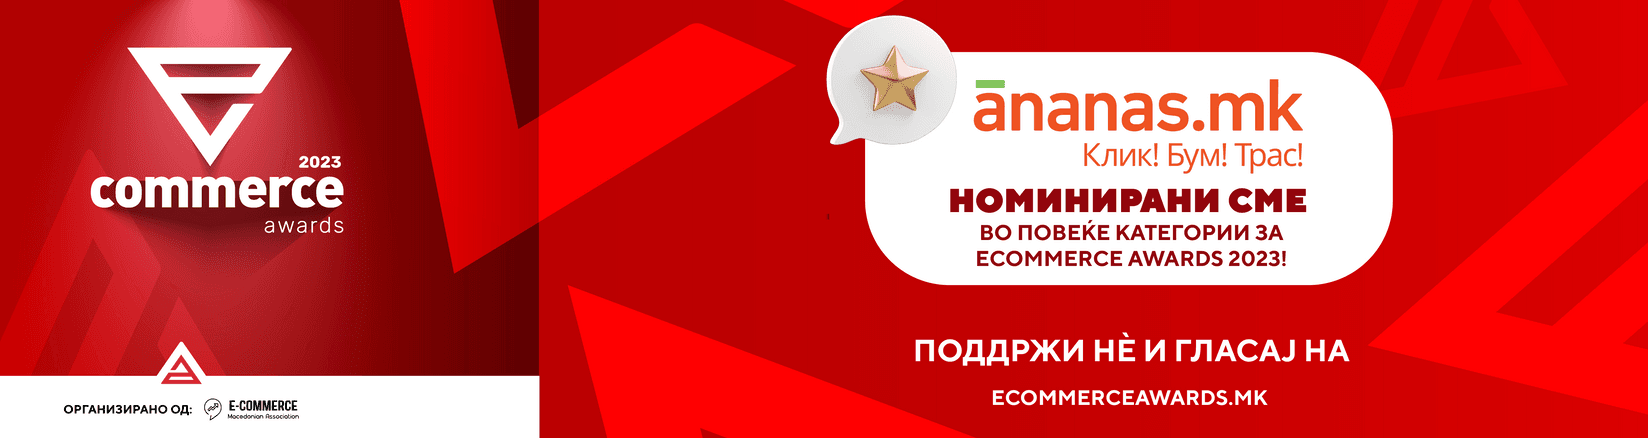 Поддржи нè и гласај за нас на Ecommerce Awards 2023